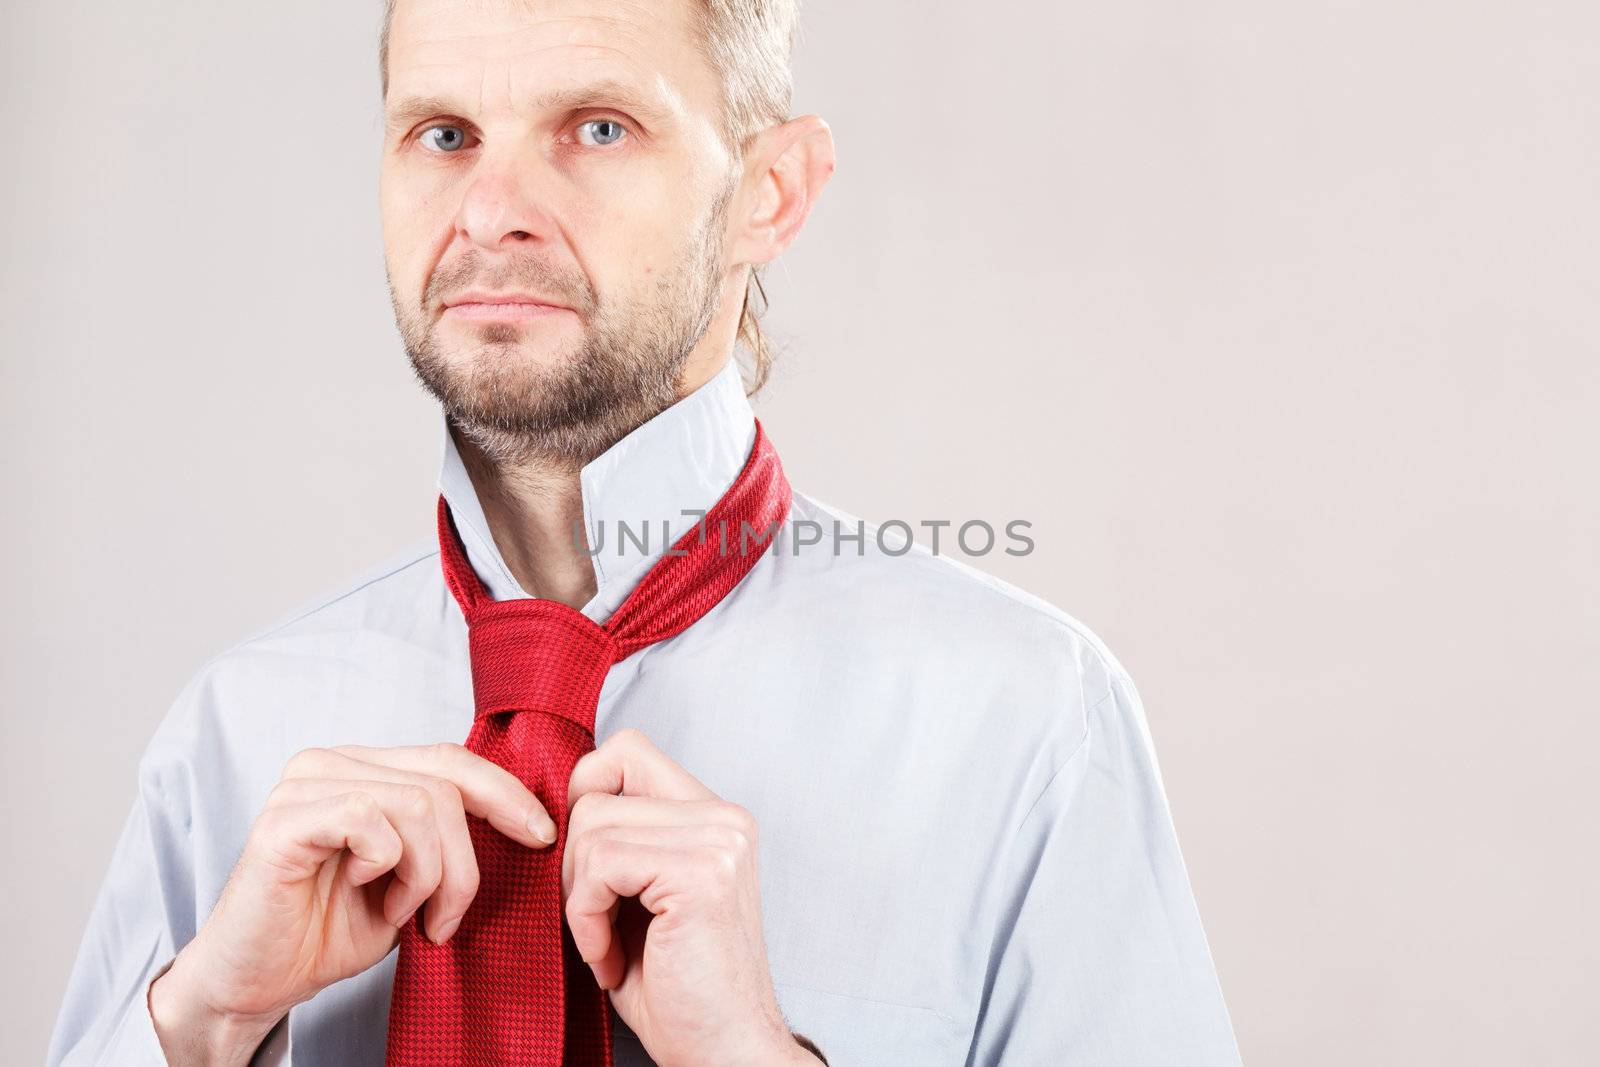 Man adjusting tie  by shebeko